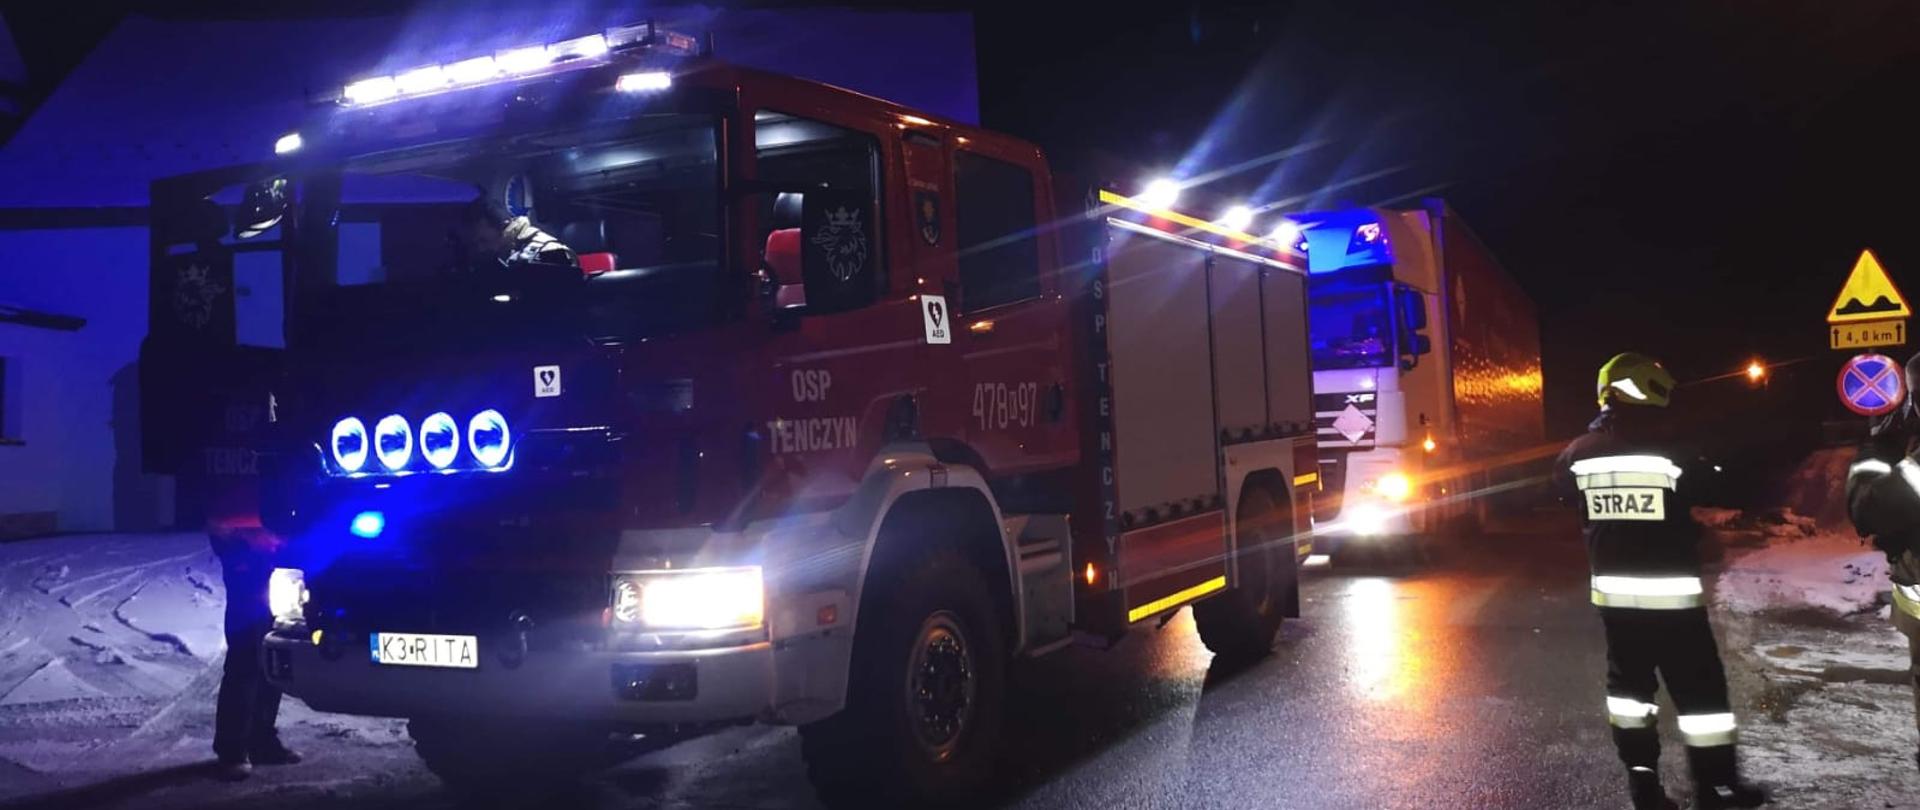 Zdjęcie pokazuje samochód strażacki OSP Tenczyn oraz widoczny za nim samochód ciężarowy z naczepą, który został odholowany w bezpieczne miejsce. Z prawej strony widoczny strażak w umundurowaniu specjalnym.